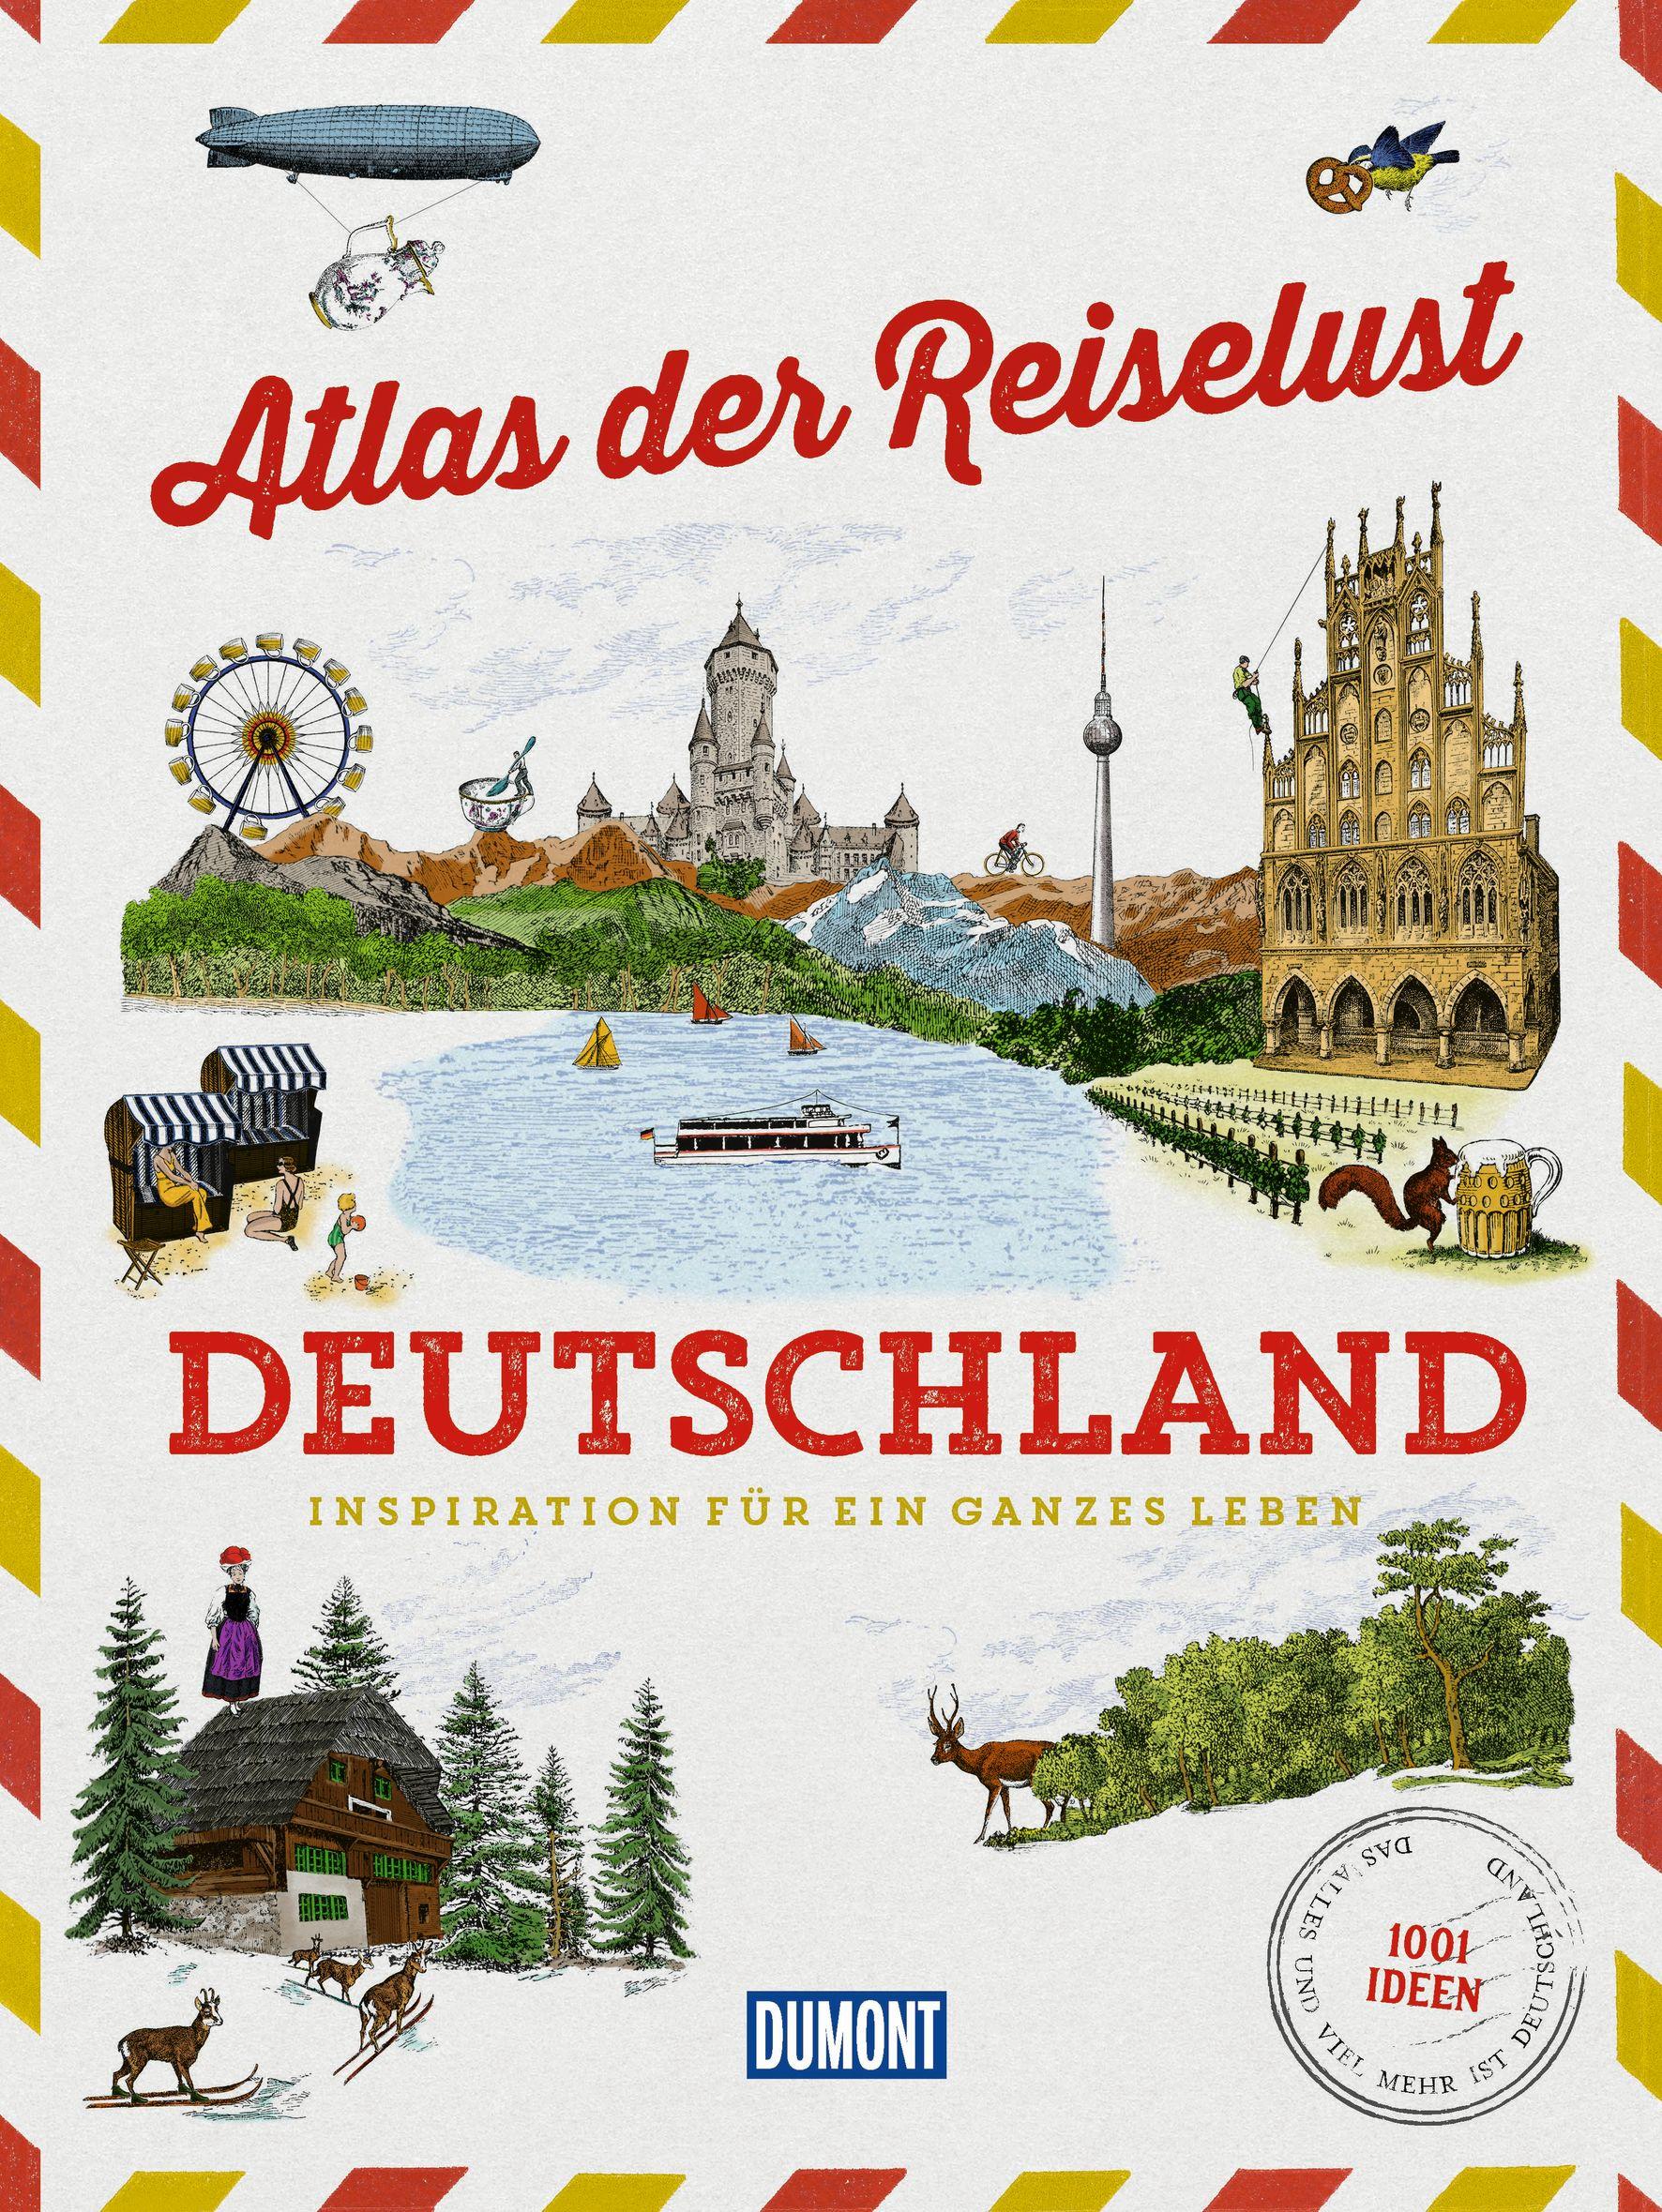 DuMont Bildband Atlas der Reiselust Deutschland Inspiration für ein ganzes Leben